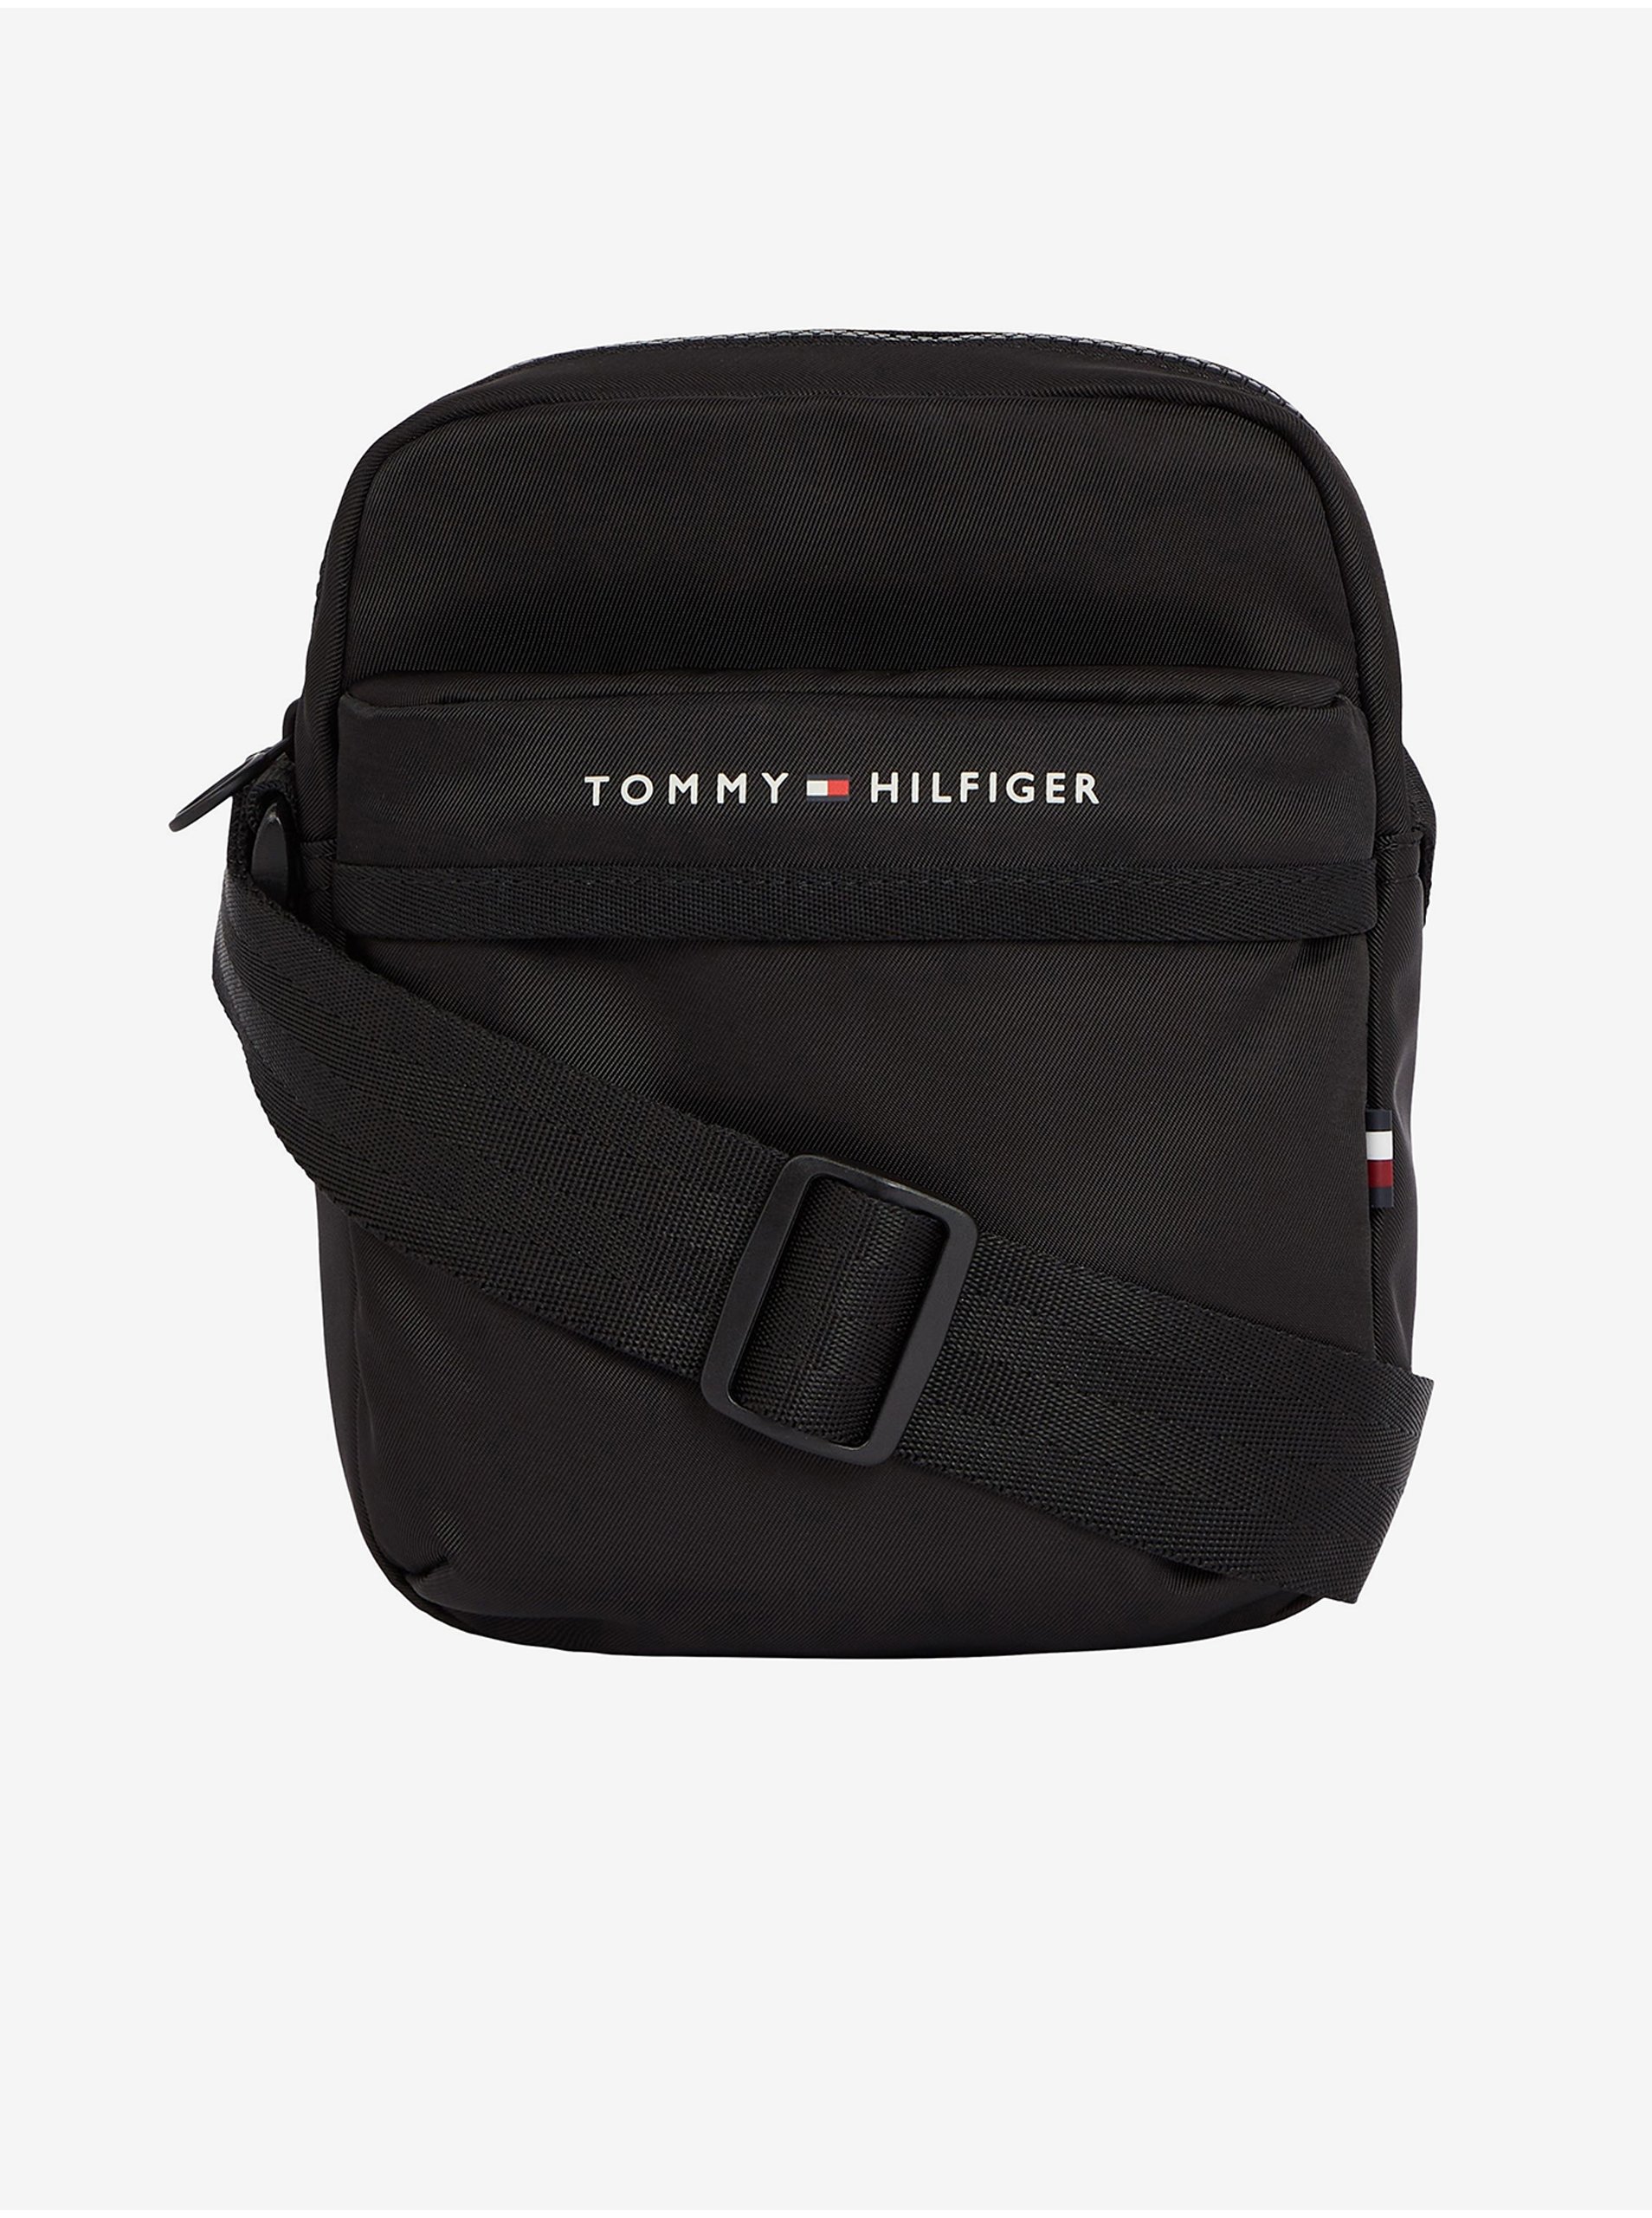 Black Men's Shoulder Bag Tommy Hilfiger - Men